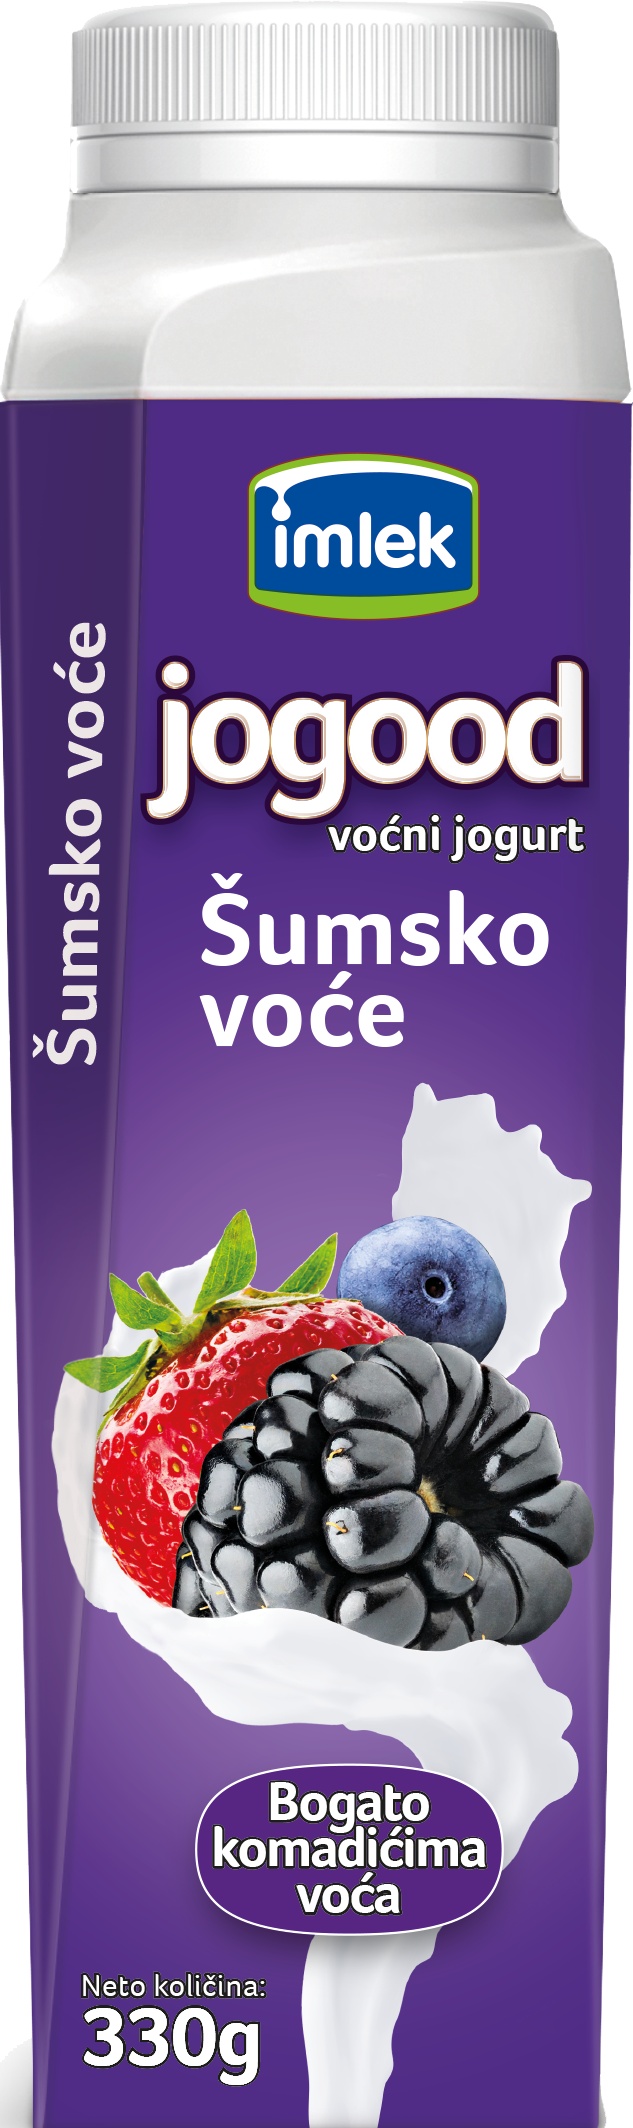 Slika za Voćni jogurt Jogood šumsko voče  3.2%mm 330g